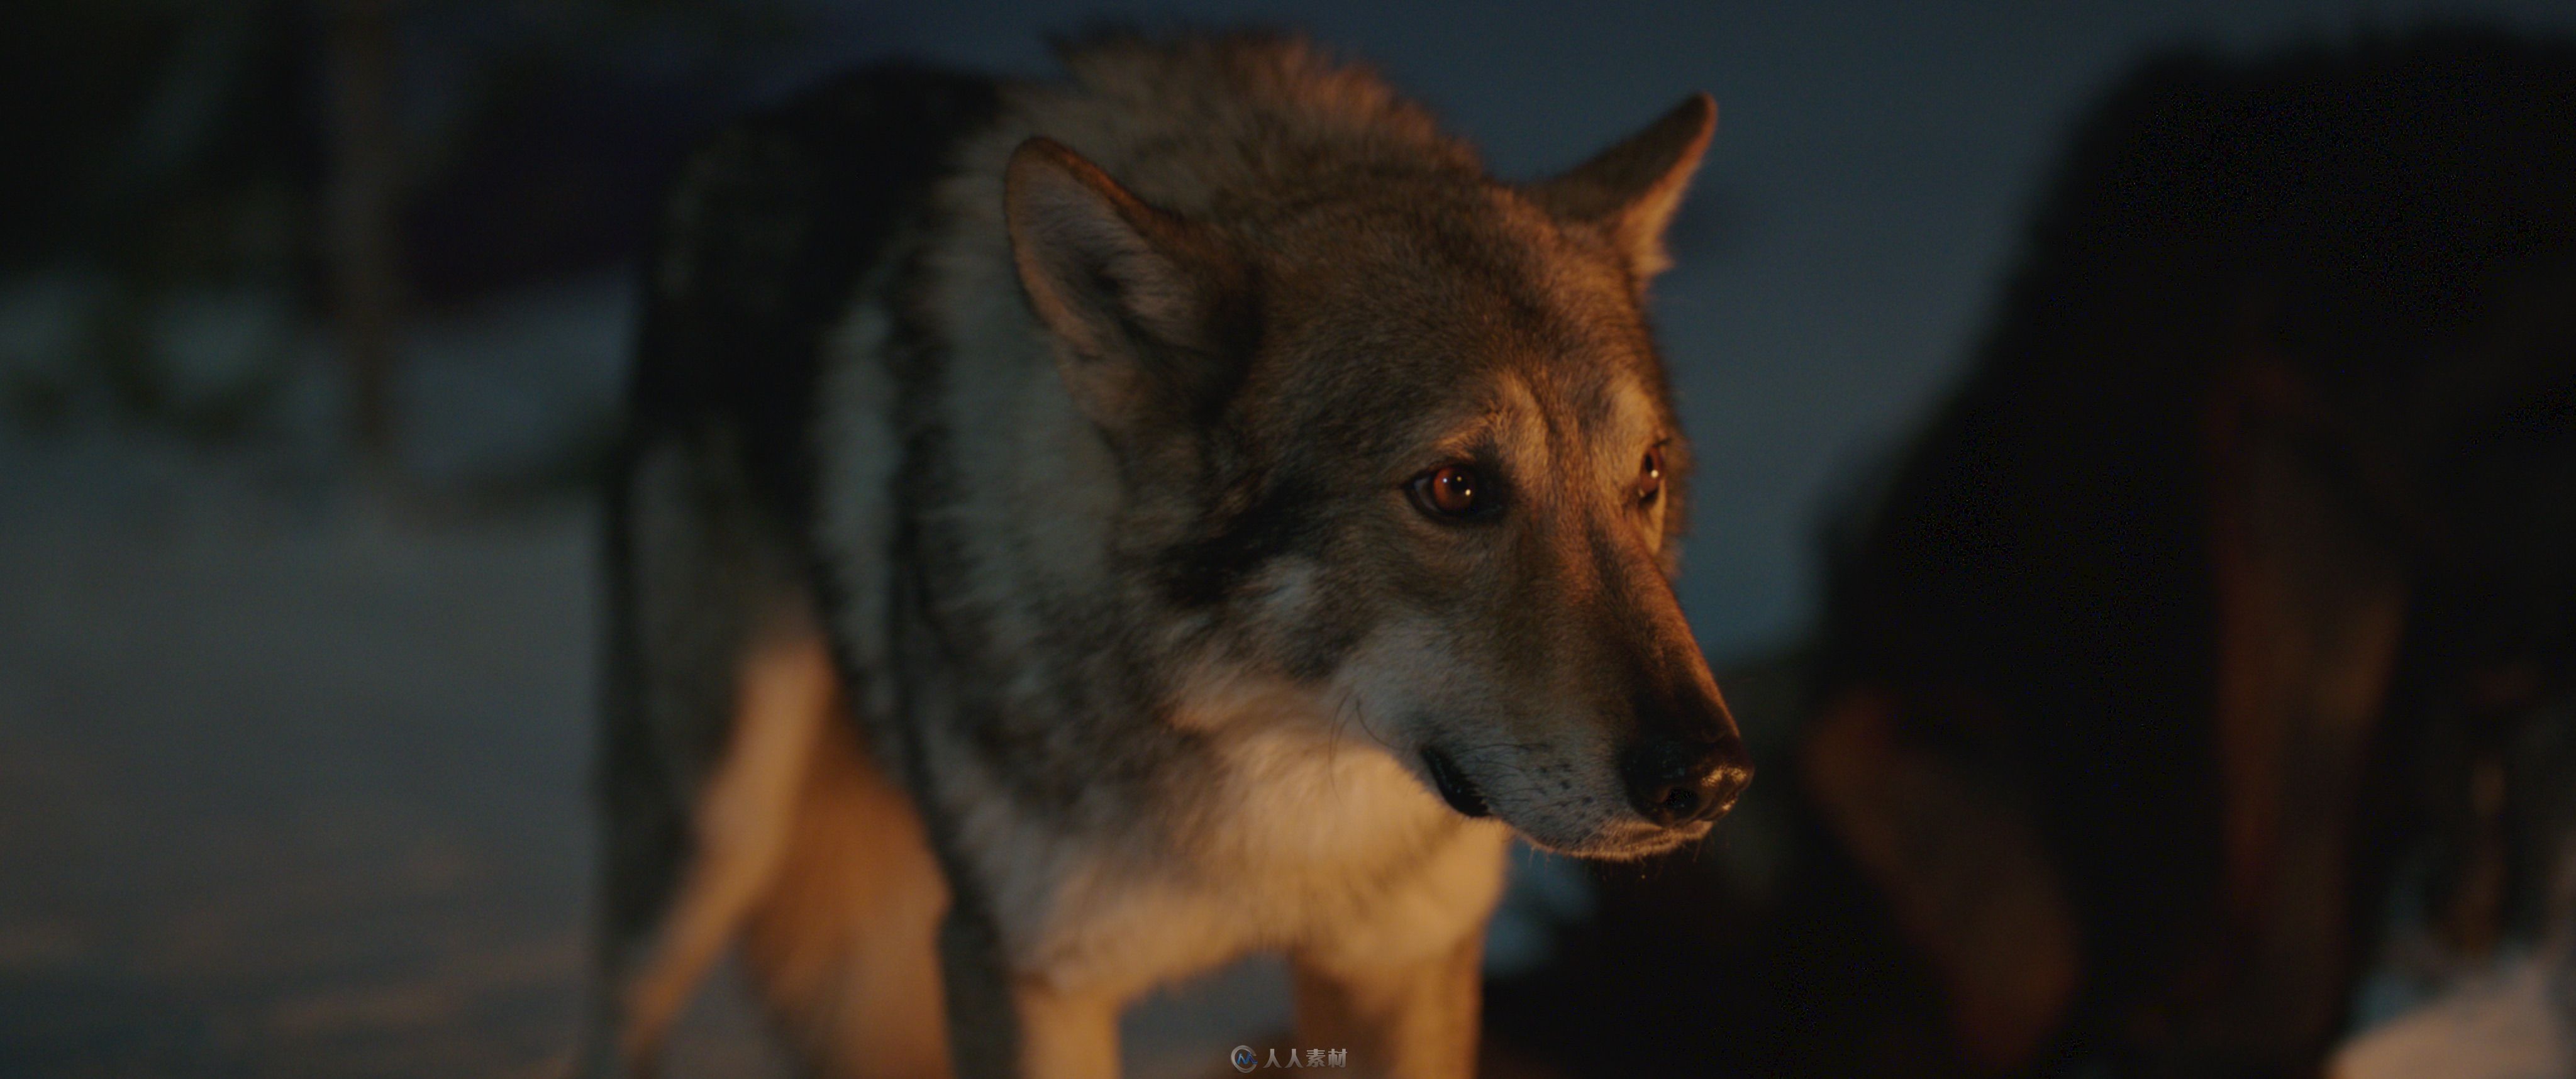 影片《阿尔法：狼伴归途》中的阿尔法的特效制作解析